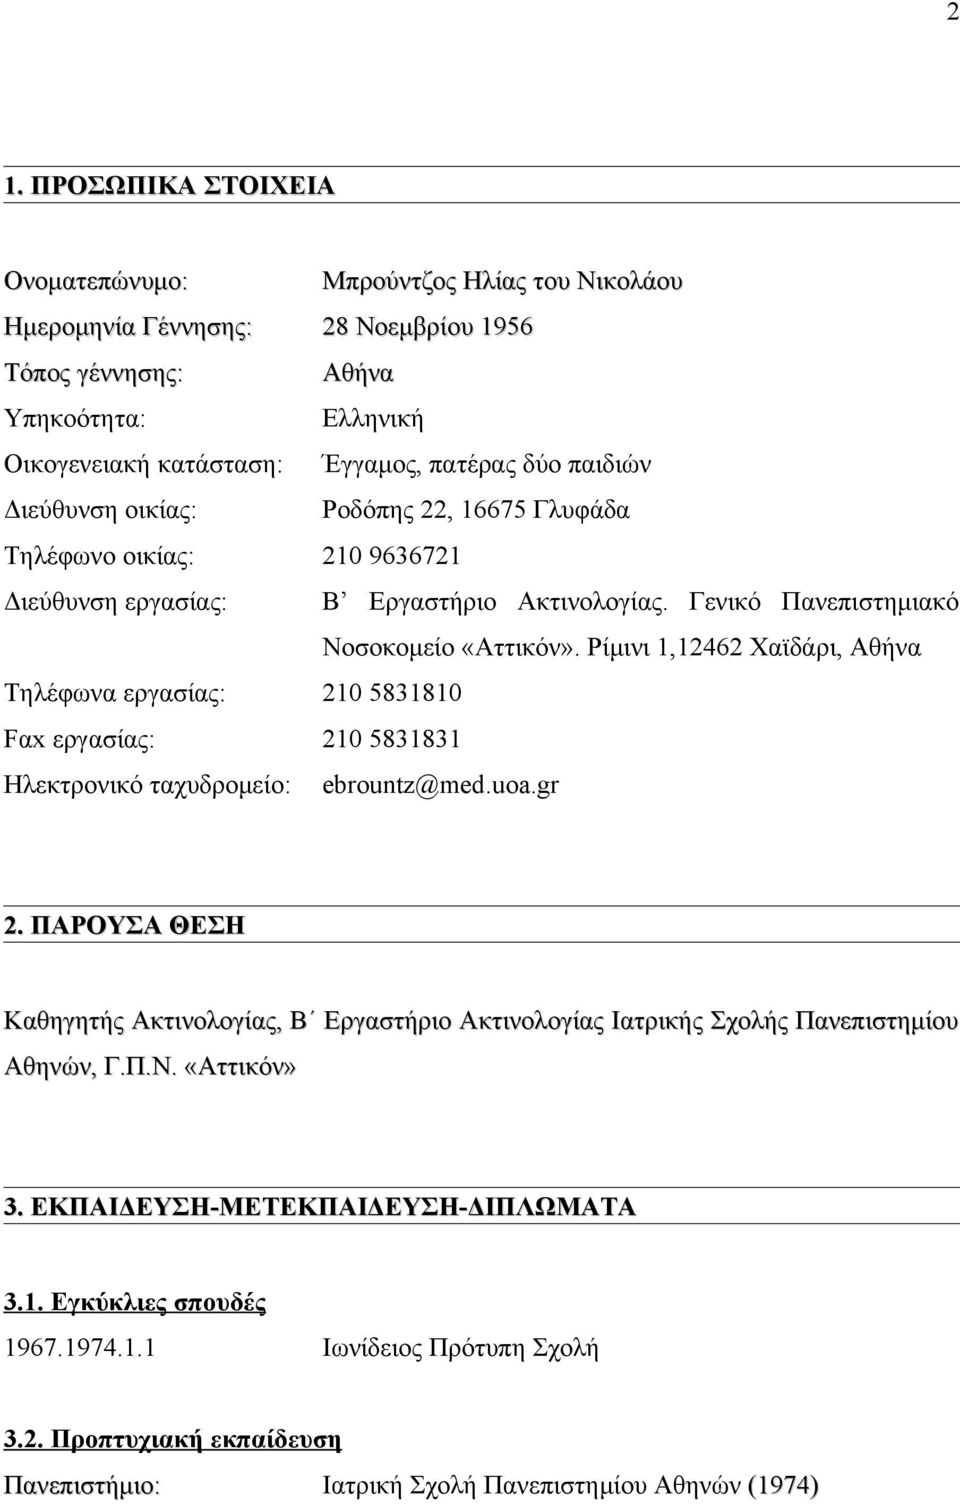 Ακτινολογίας. Γενικό Πανεπιστημιακό Νοσοκομείο «Αττικόν». Ρίμινι 1,12462 Χαϊδάρι, Αθήνα ebrountz@med.uoa.gr 2.